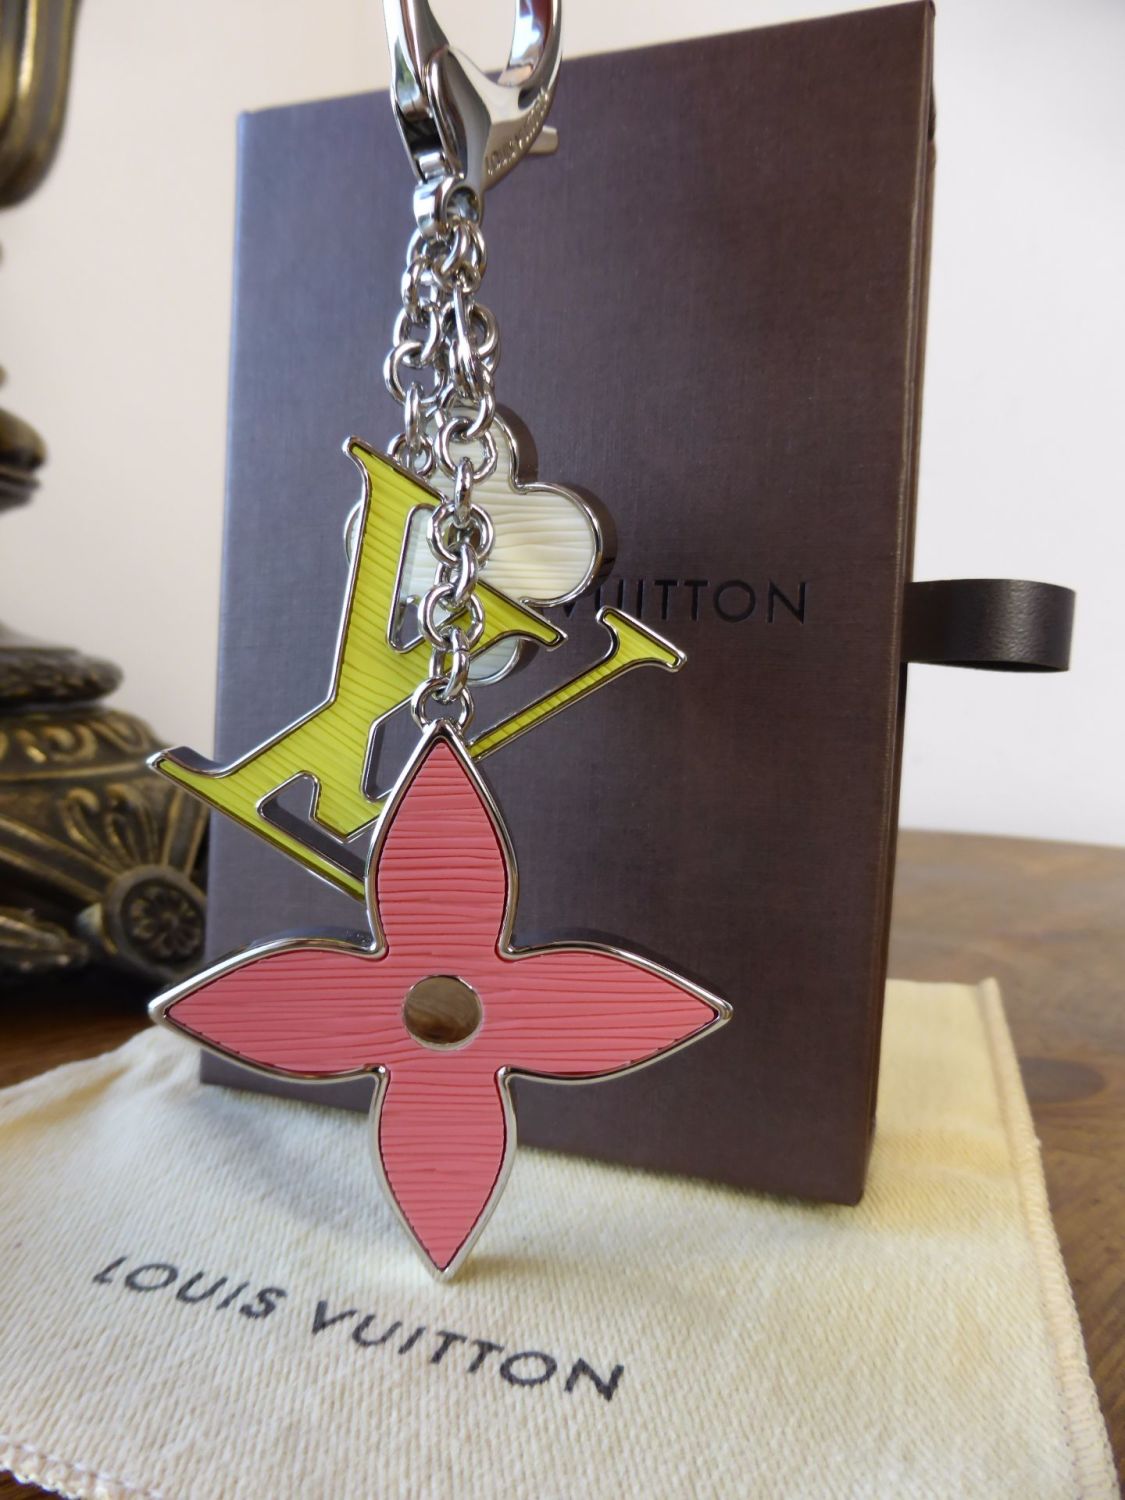 Louis Vuitton Fleur d'Epi Bag Charm Keyring - SOLD